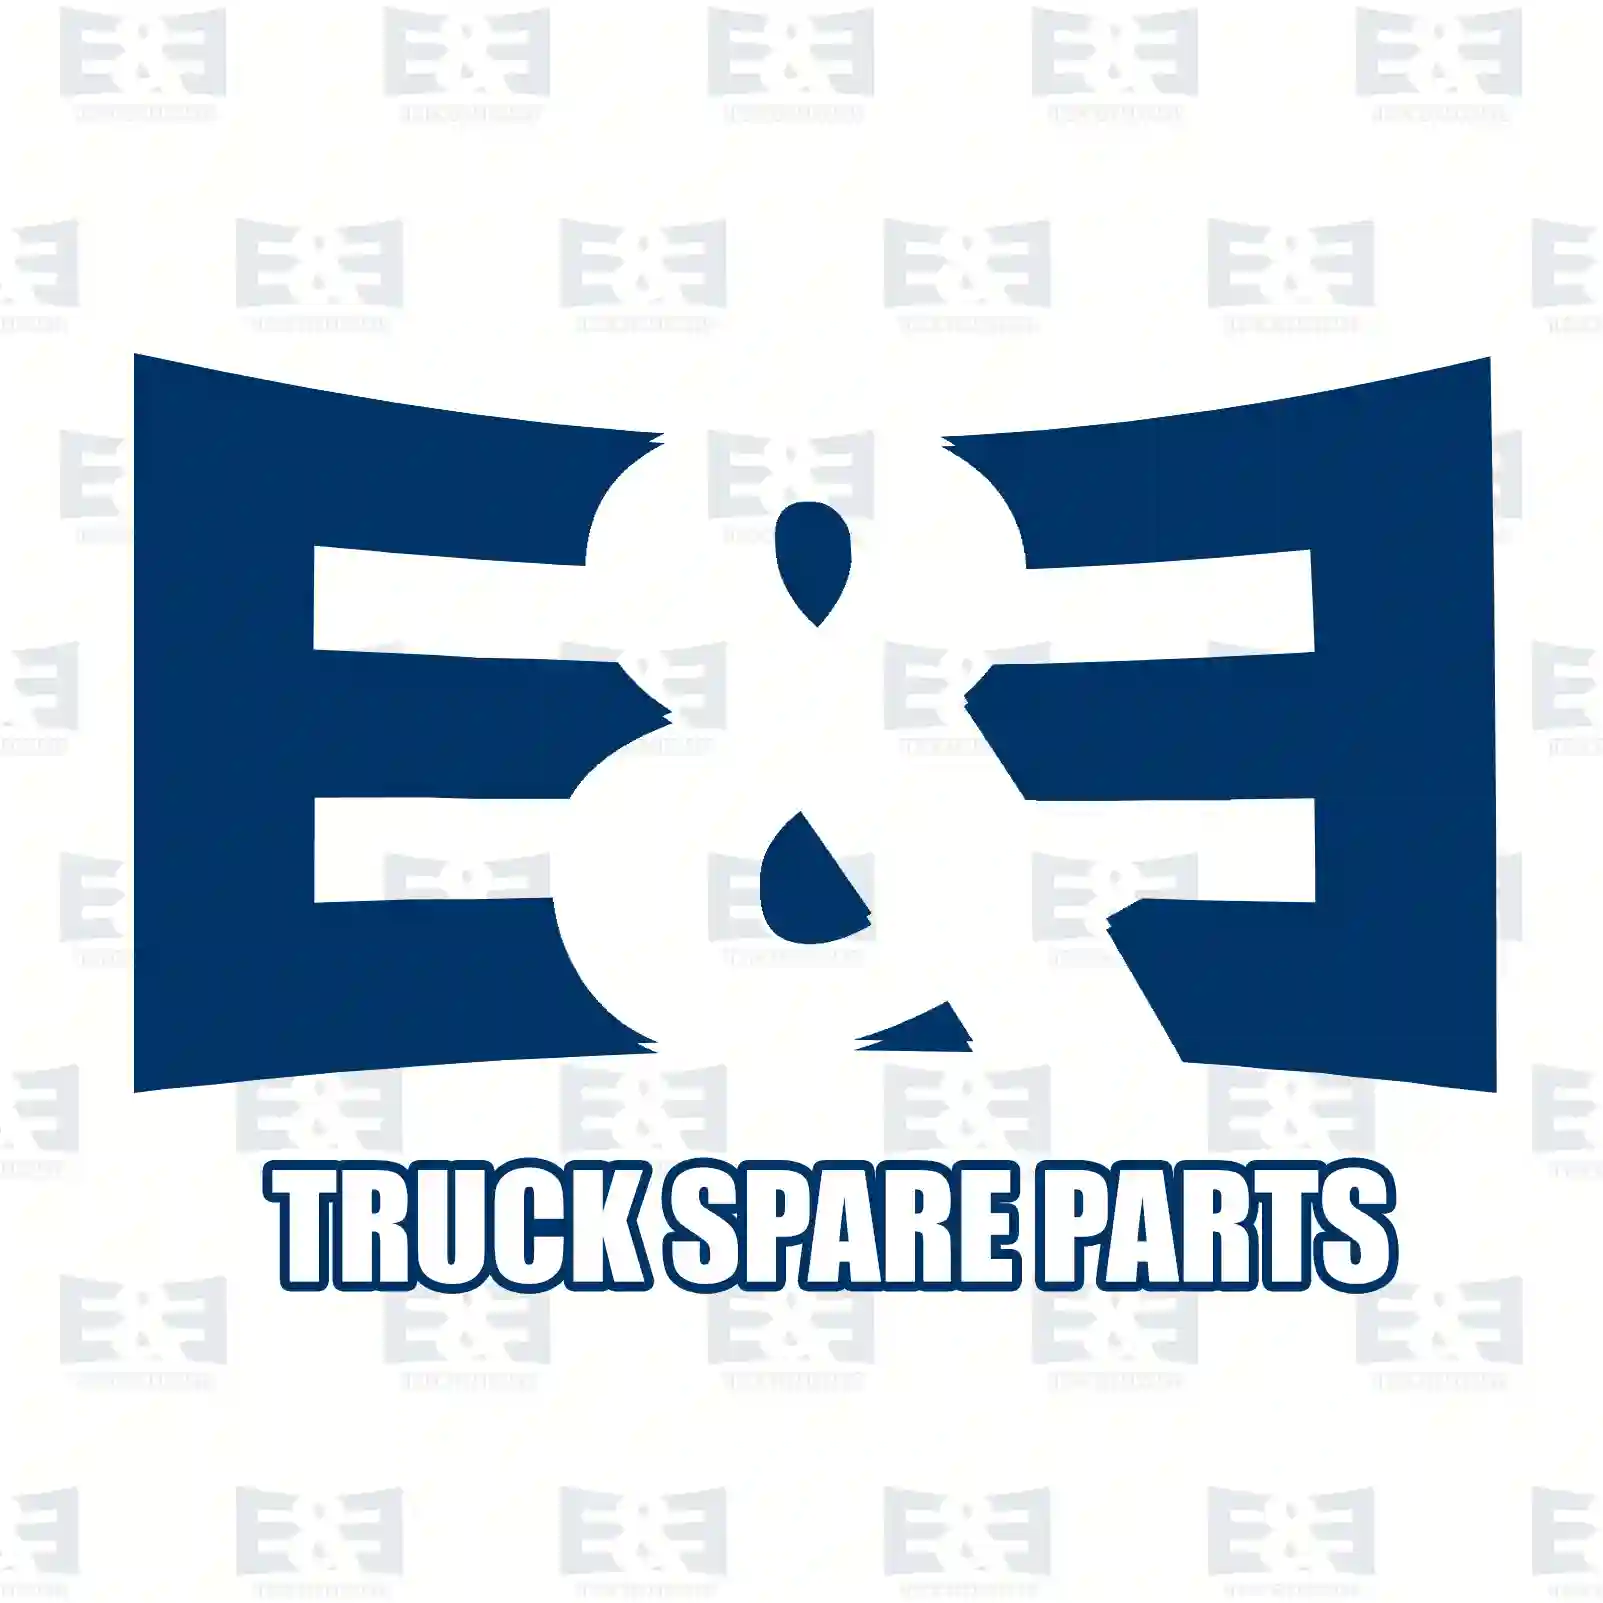 Brake disc, with ABS ring, 2E2294844, 02996027, 07186309, 2996027, 7186309, , , , , , ||  2E2294844 E&E Truck Spare Parts | Truck Spare Parts, Auotomotive Spare Parts Brake disc, with ABS ring, 2E2294844, 02996027, 07186309, 2996027, 7186309, , , , , , ||  2E2294844 E&E Truck Spare Parts | Truck Spare Parts, Auotomotive Spare Parts